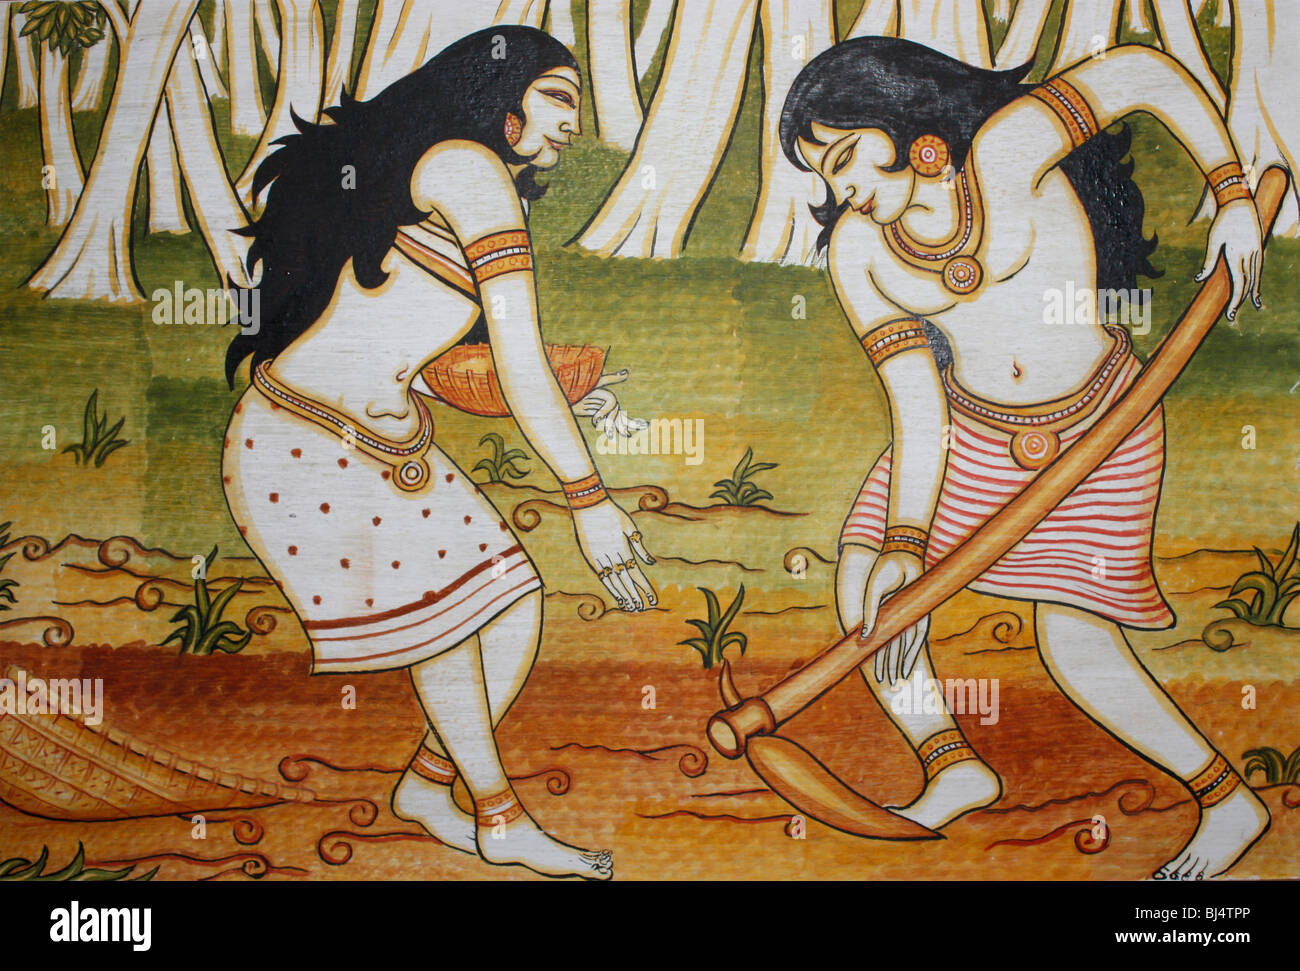 Ein Bild gemalt auf der Wand zeigt typisch indischen ethnischen Kultur Stockfoto